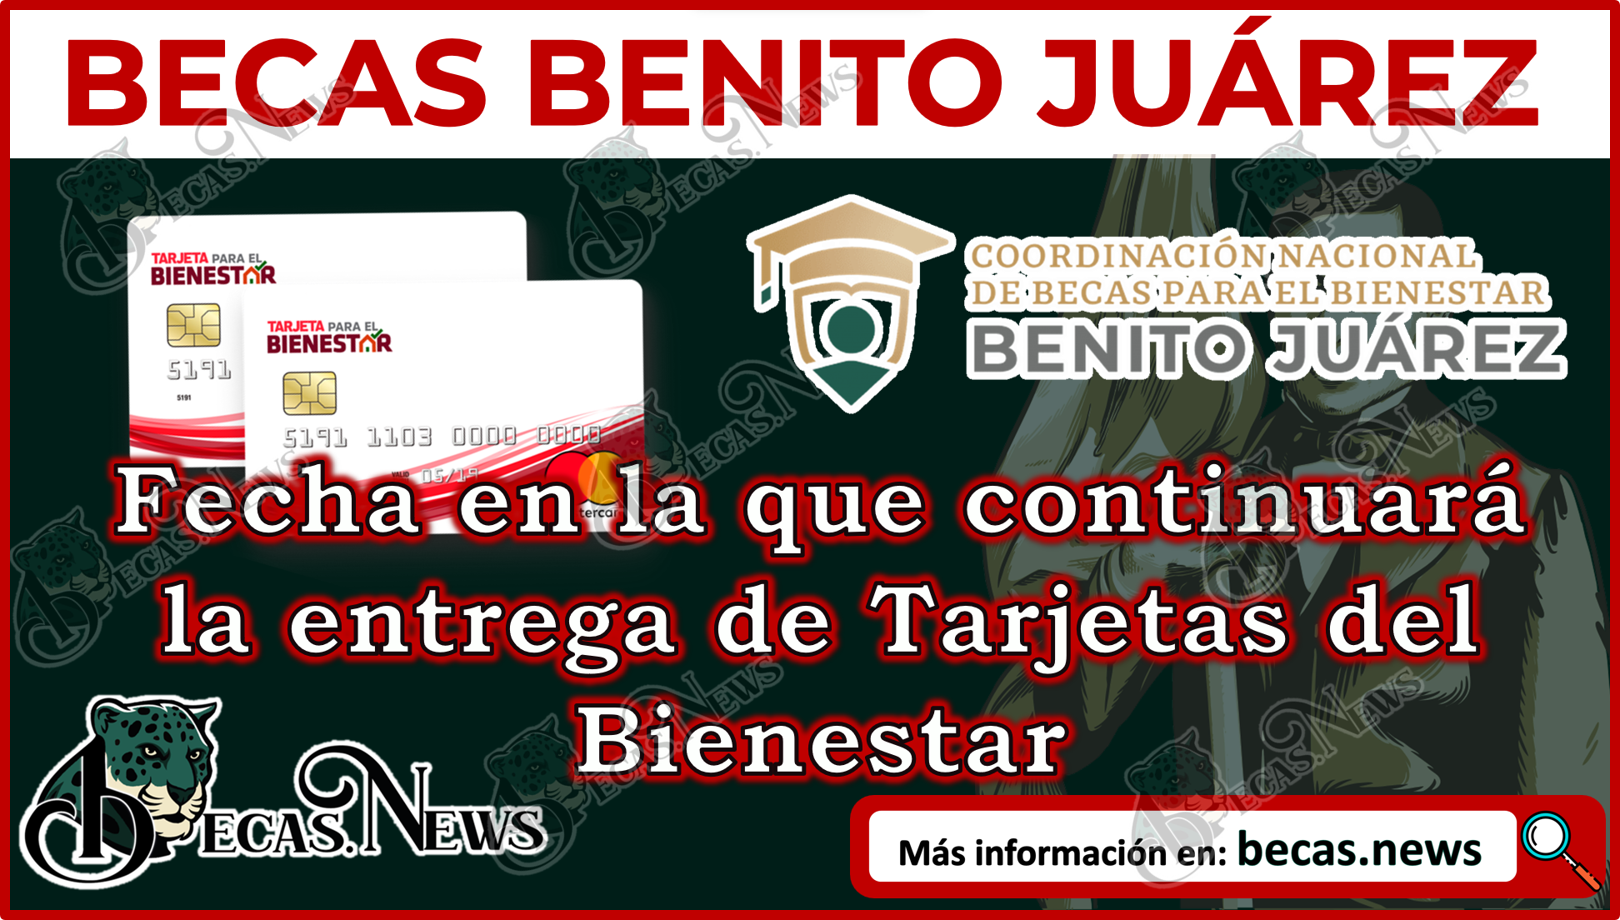 Becas Benito Juárez 2023 | En esta fecha se continuará con la entrega de Tarjetas del Bienestar